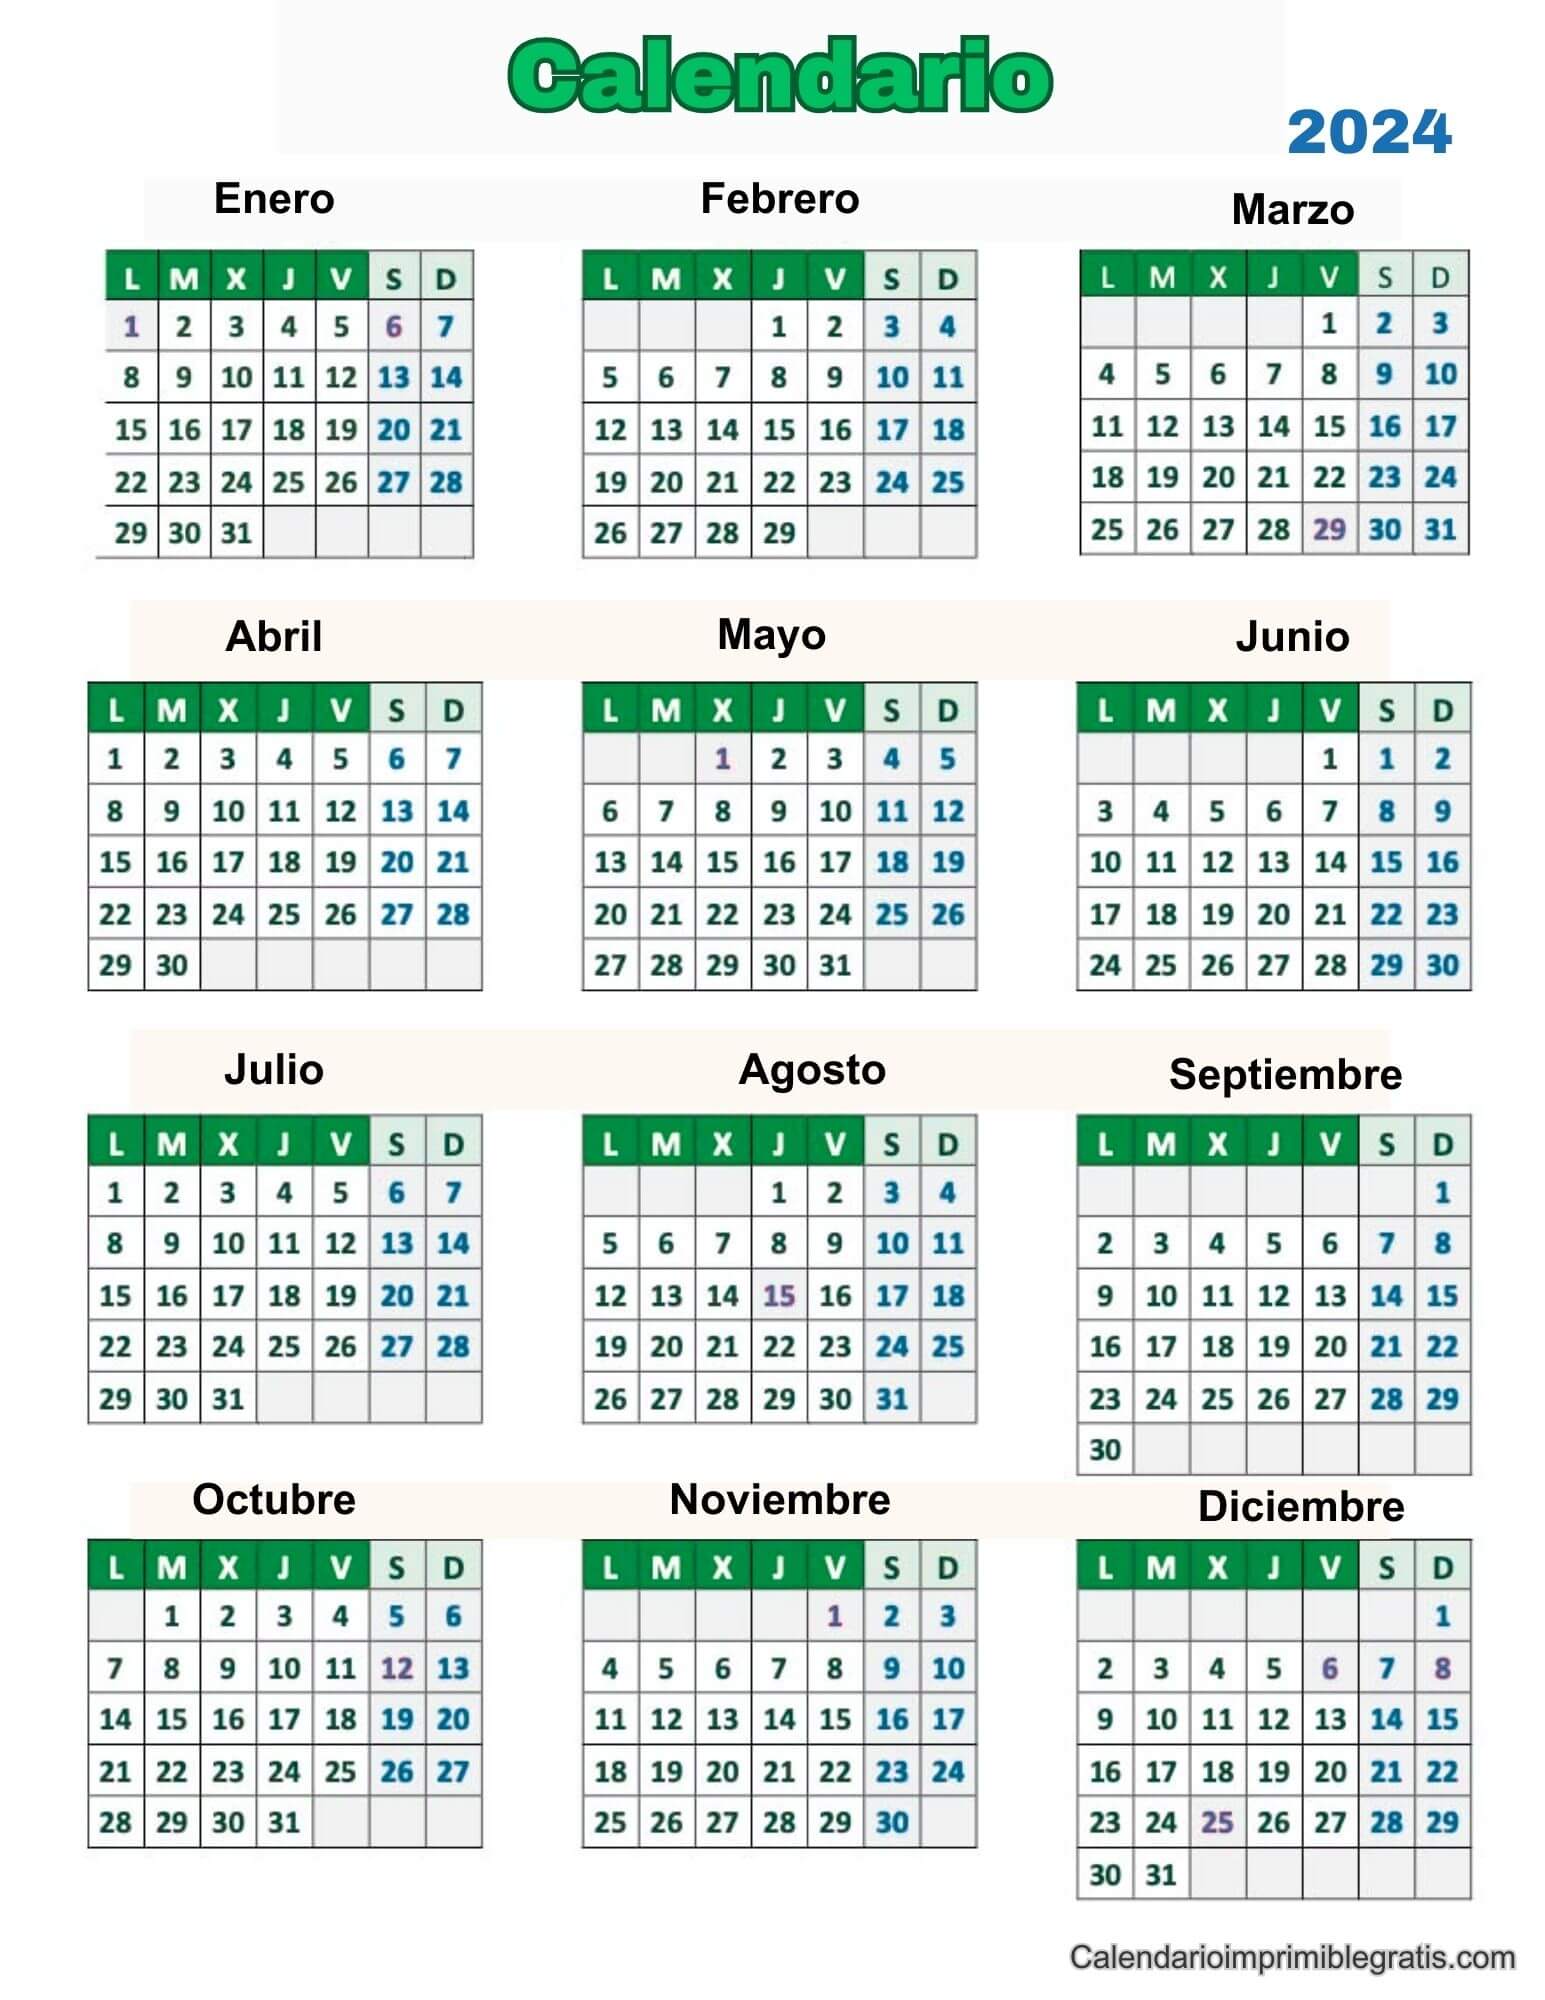 Calendario anual 2024 con notas